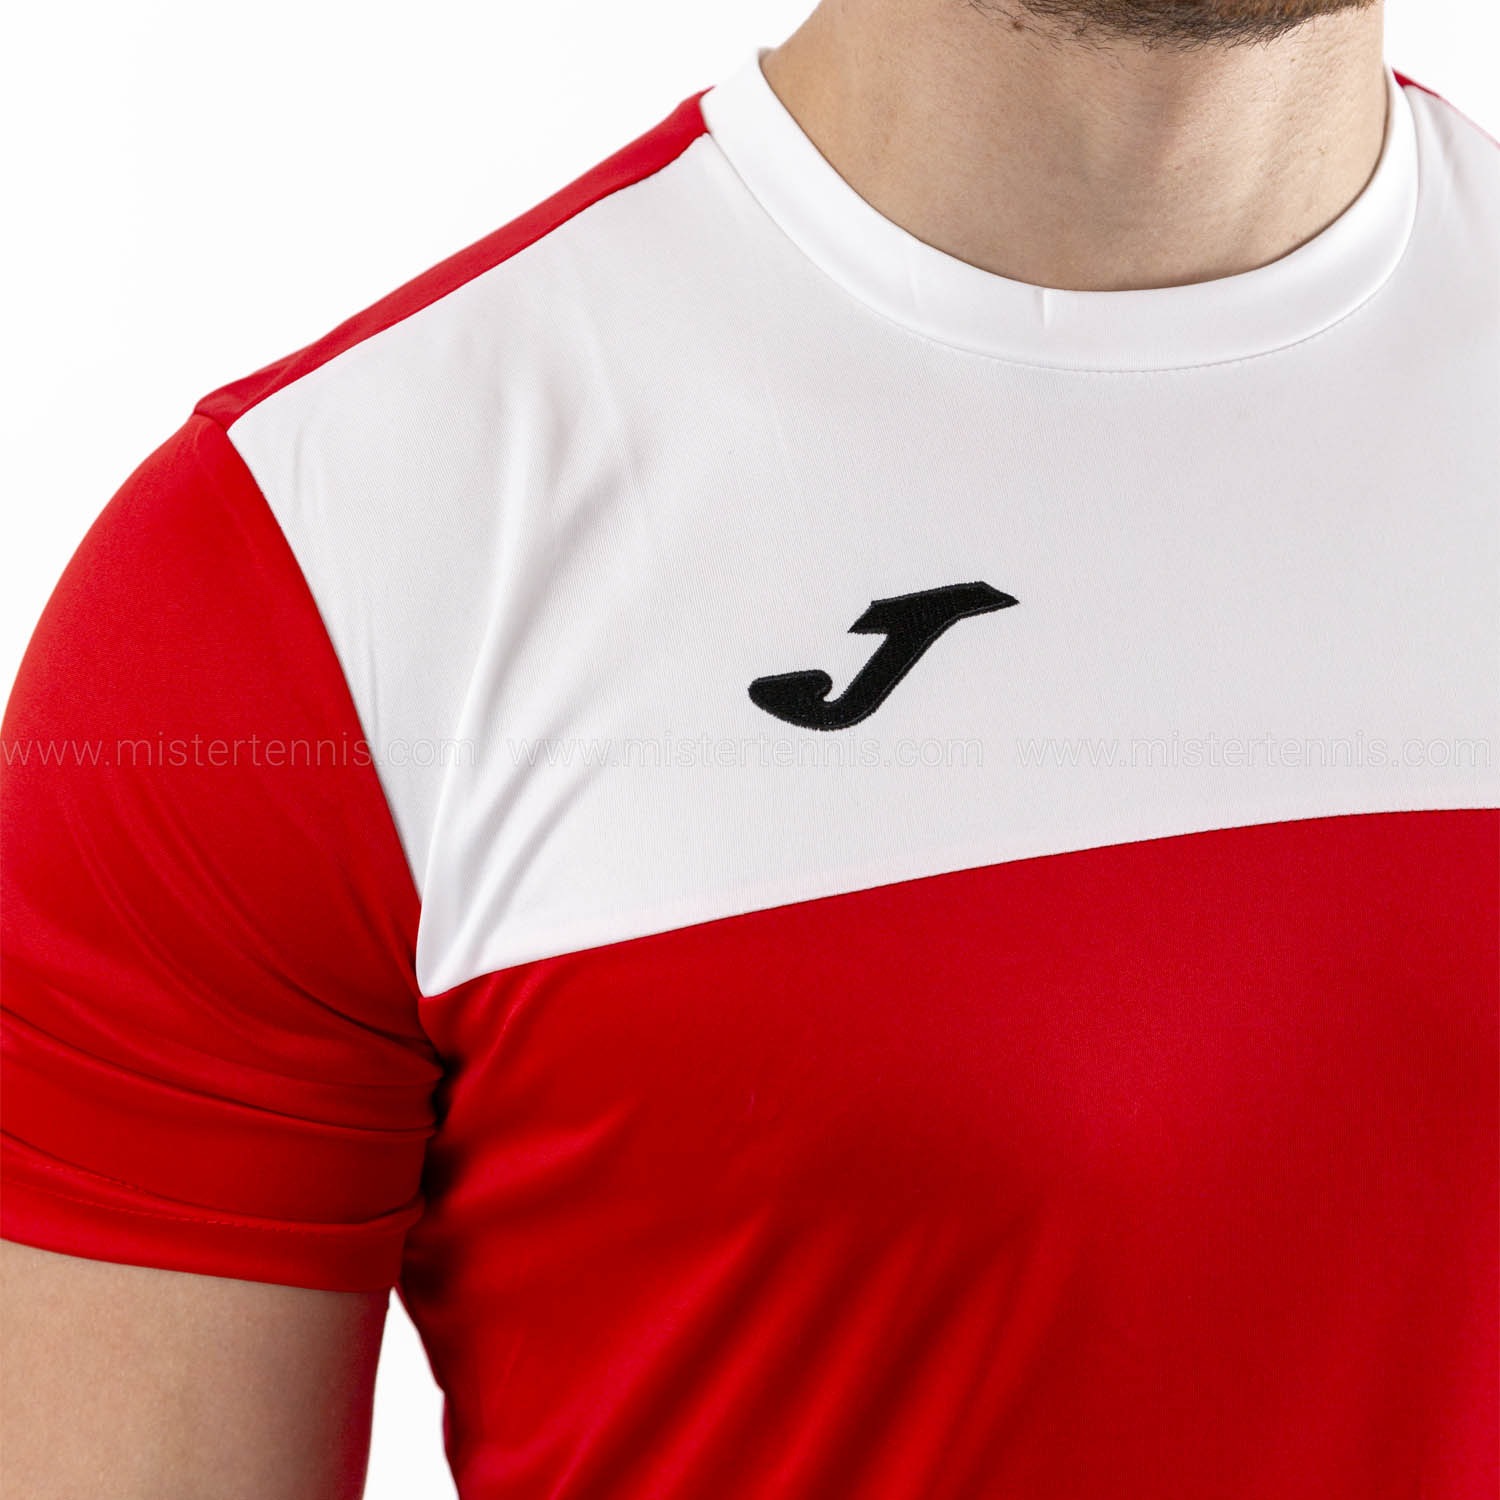 Joma Winner T-Shirt - Red/White